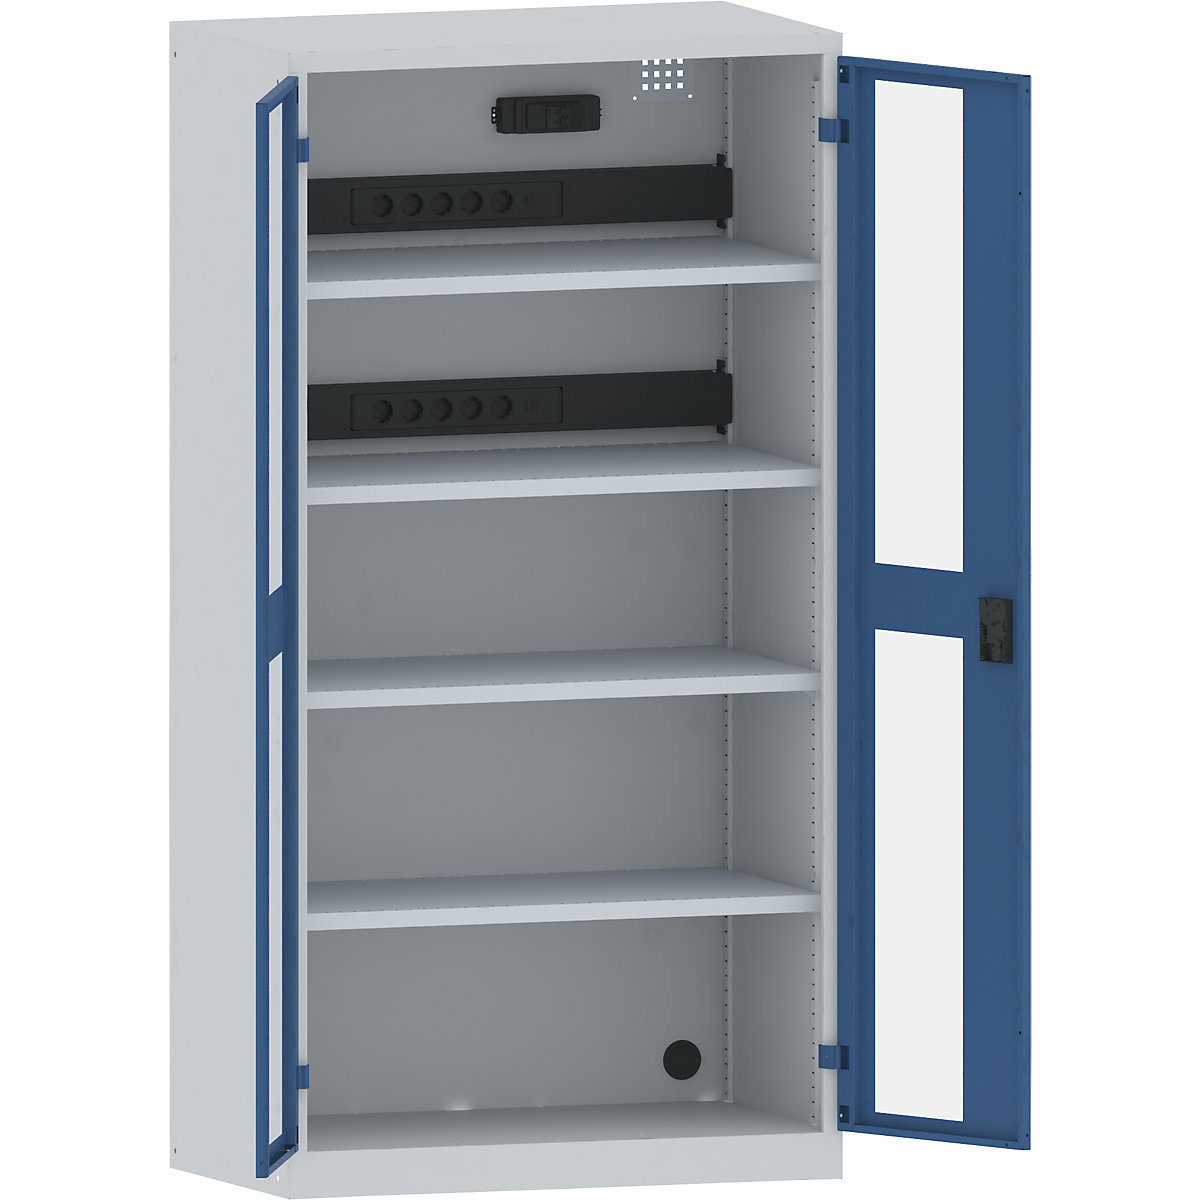 Akkumulátortöltő szekrény – LISTA, 4 polc, ablakos ajtók, 2 áramellátó egység áramvédő kapcsolóval/megszakítóval a hátoldalon, kék / szürke-10